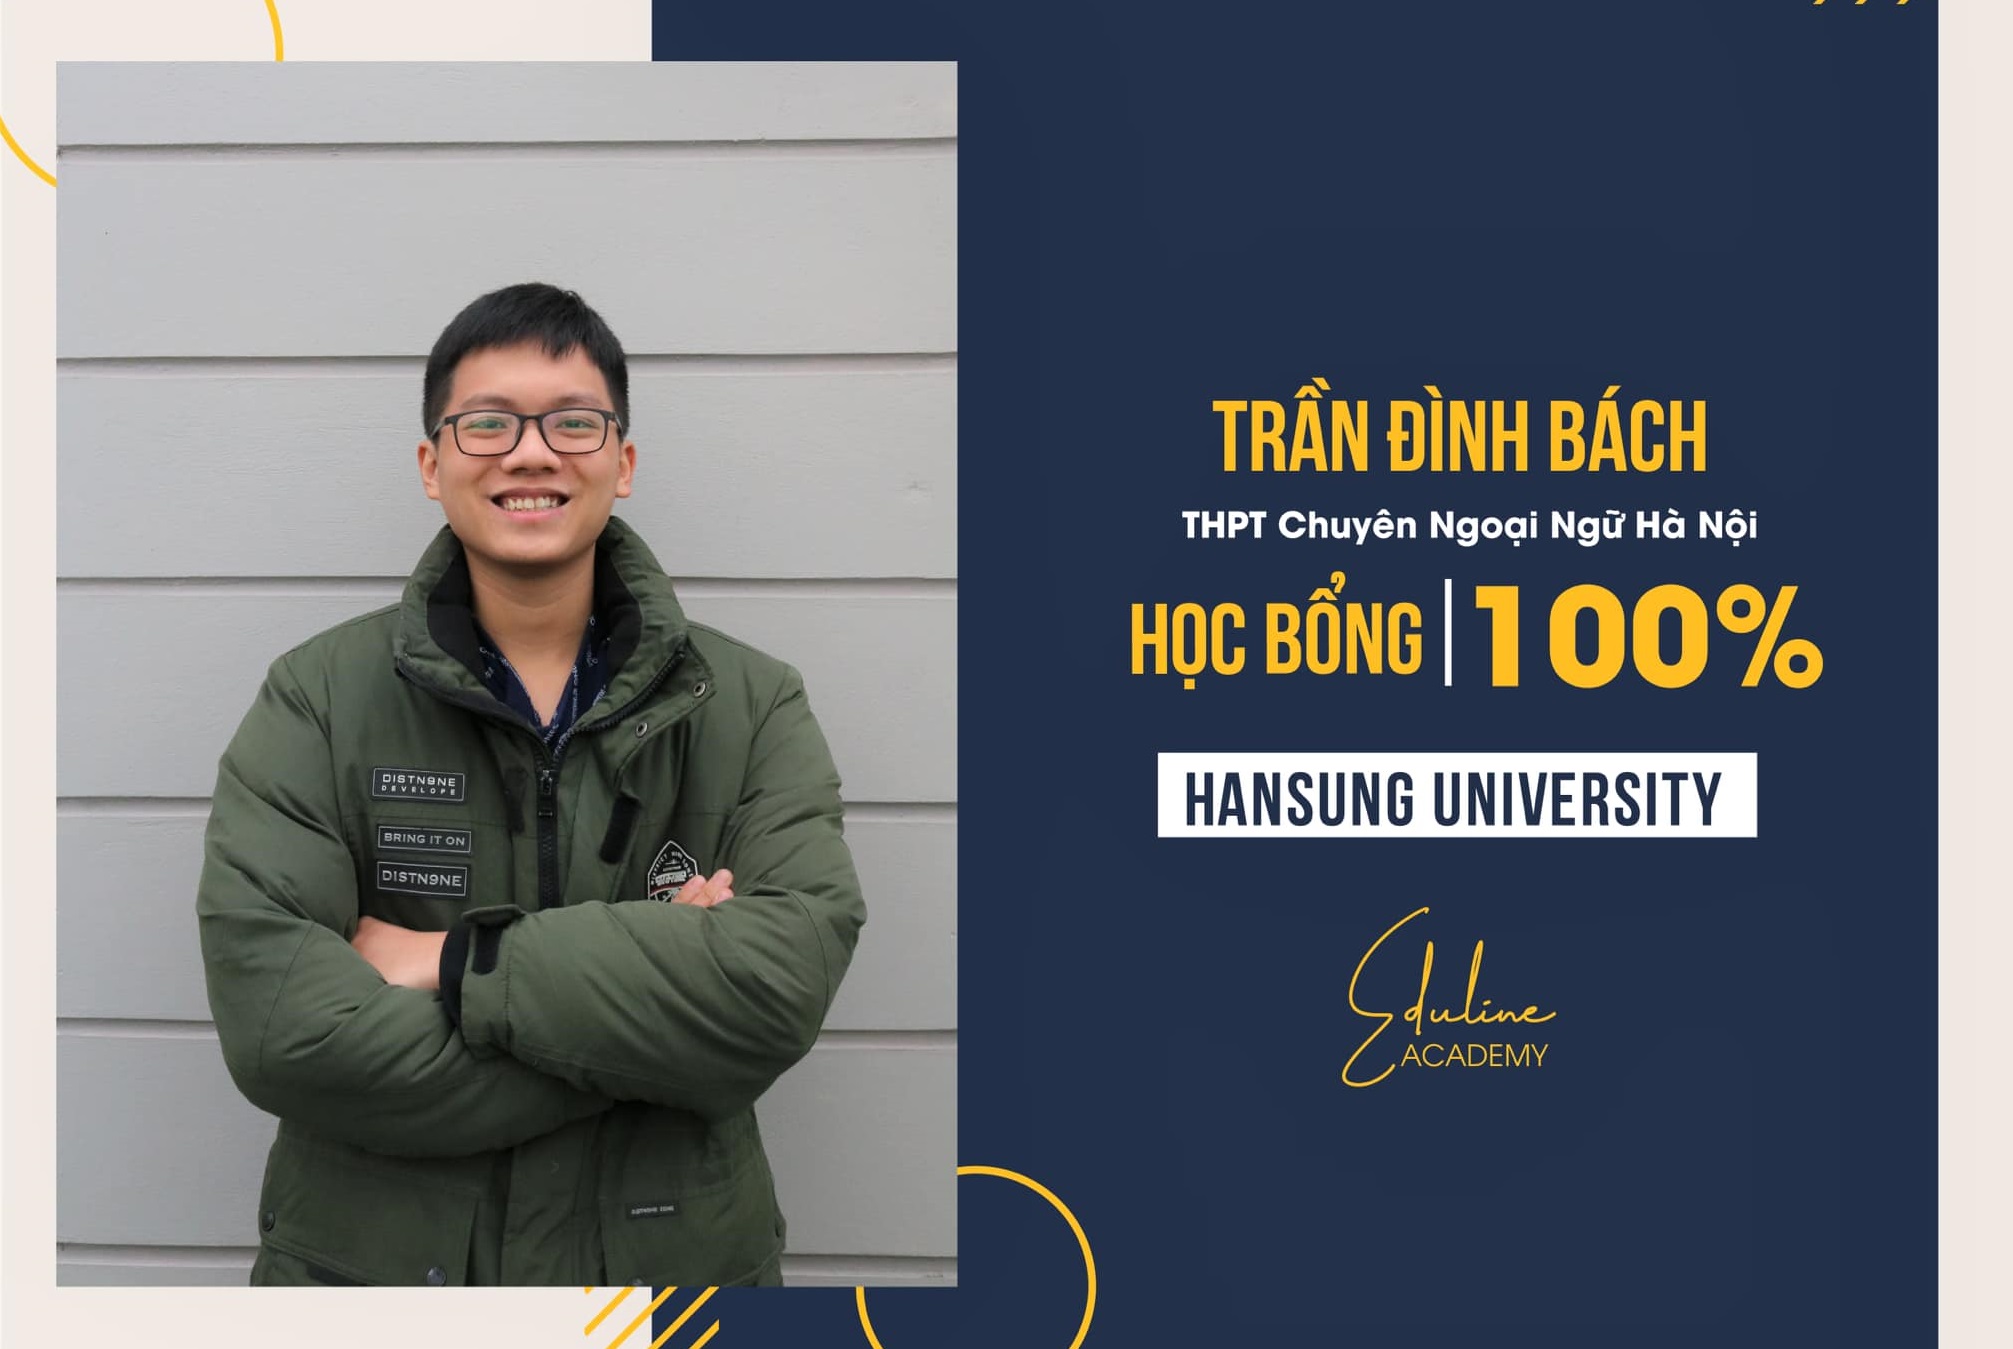 Hành Trình Dành Học Bổng 100% từ Hansung University